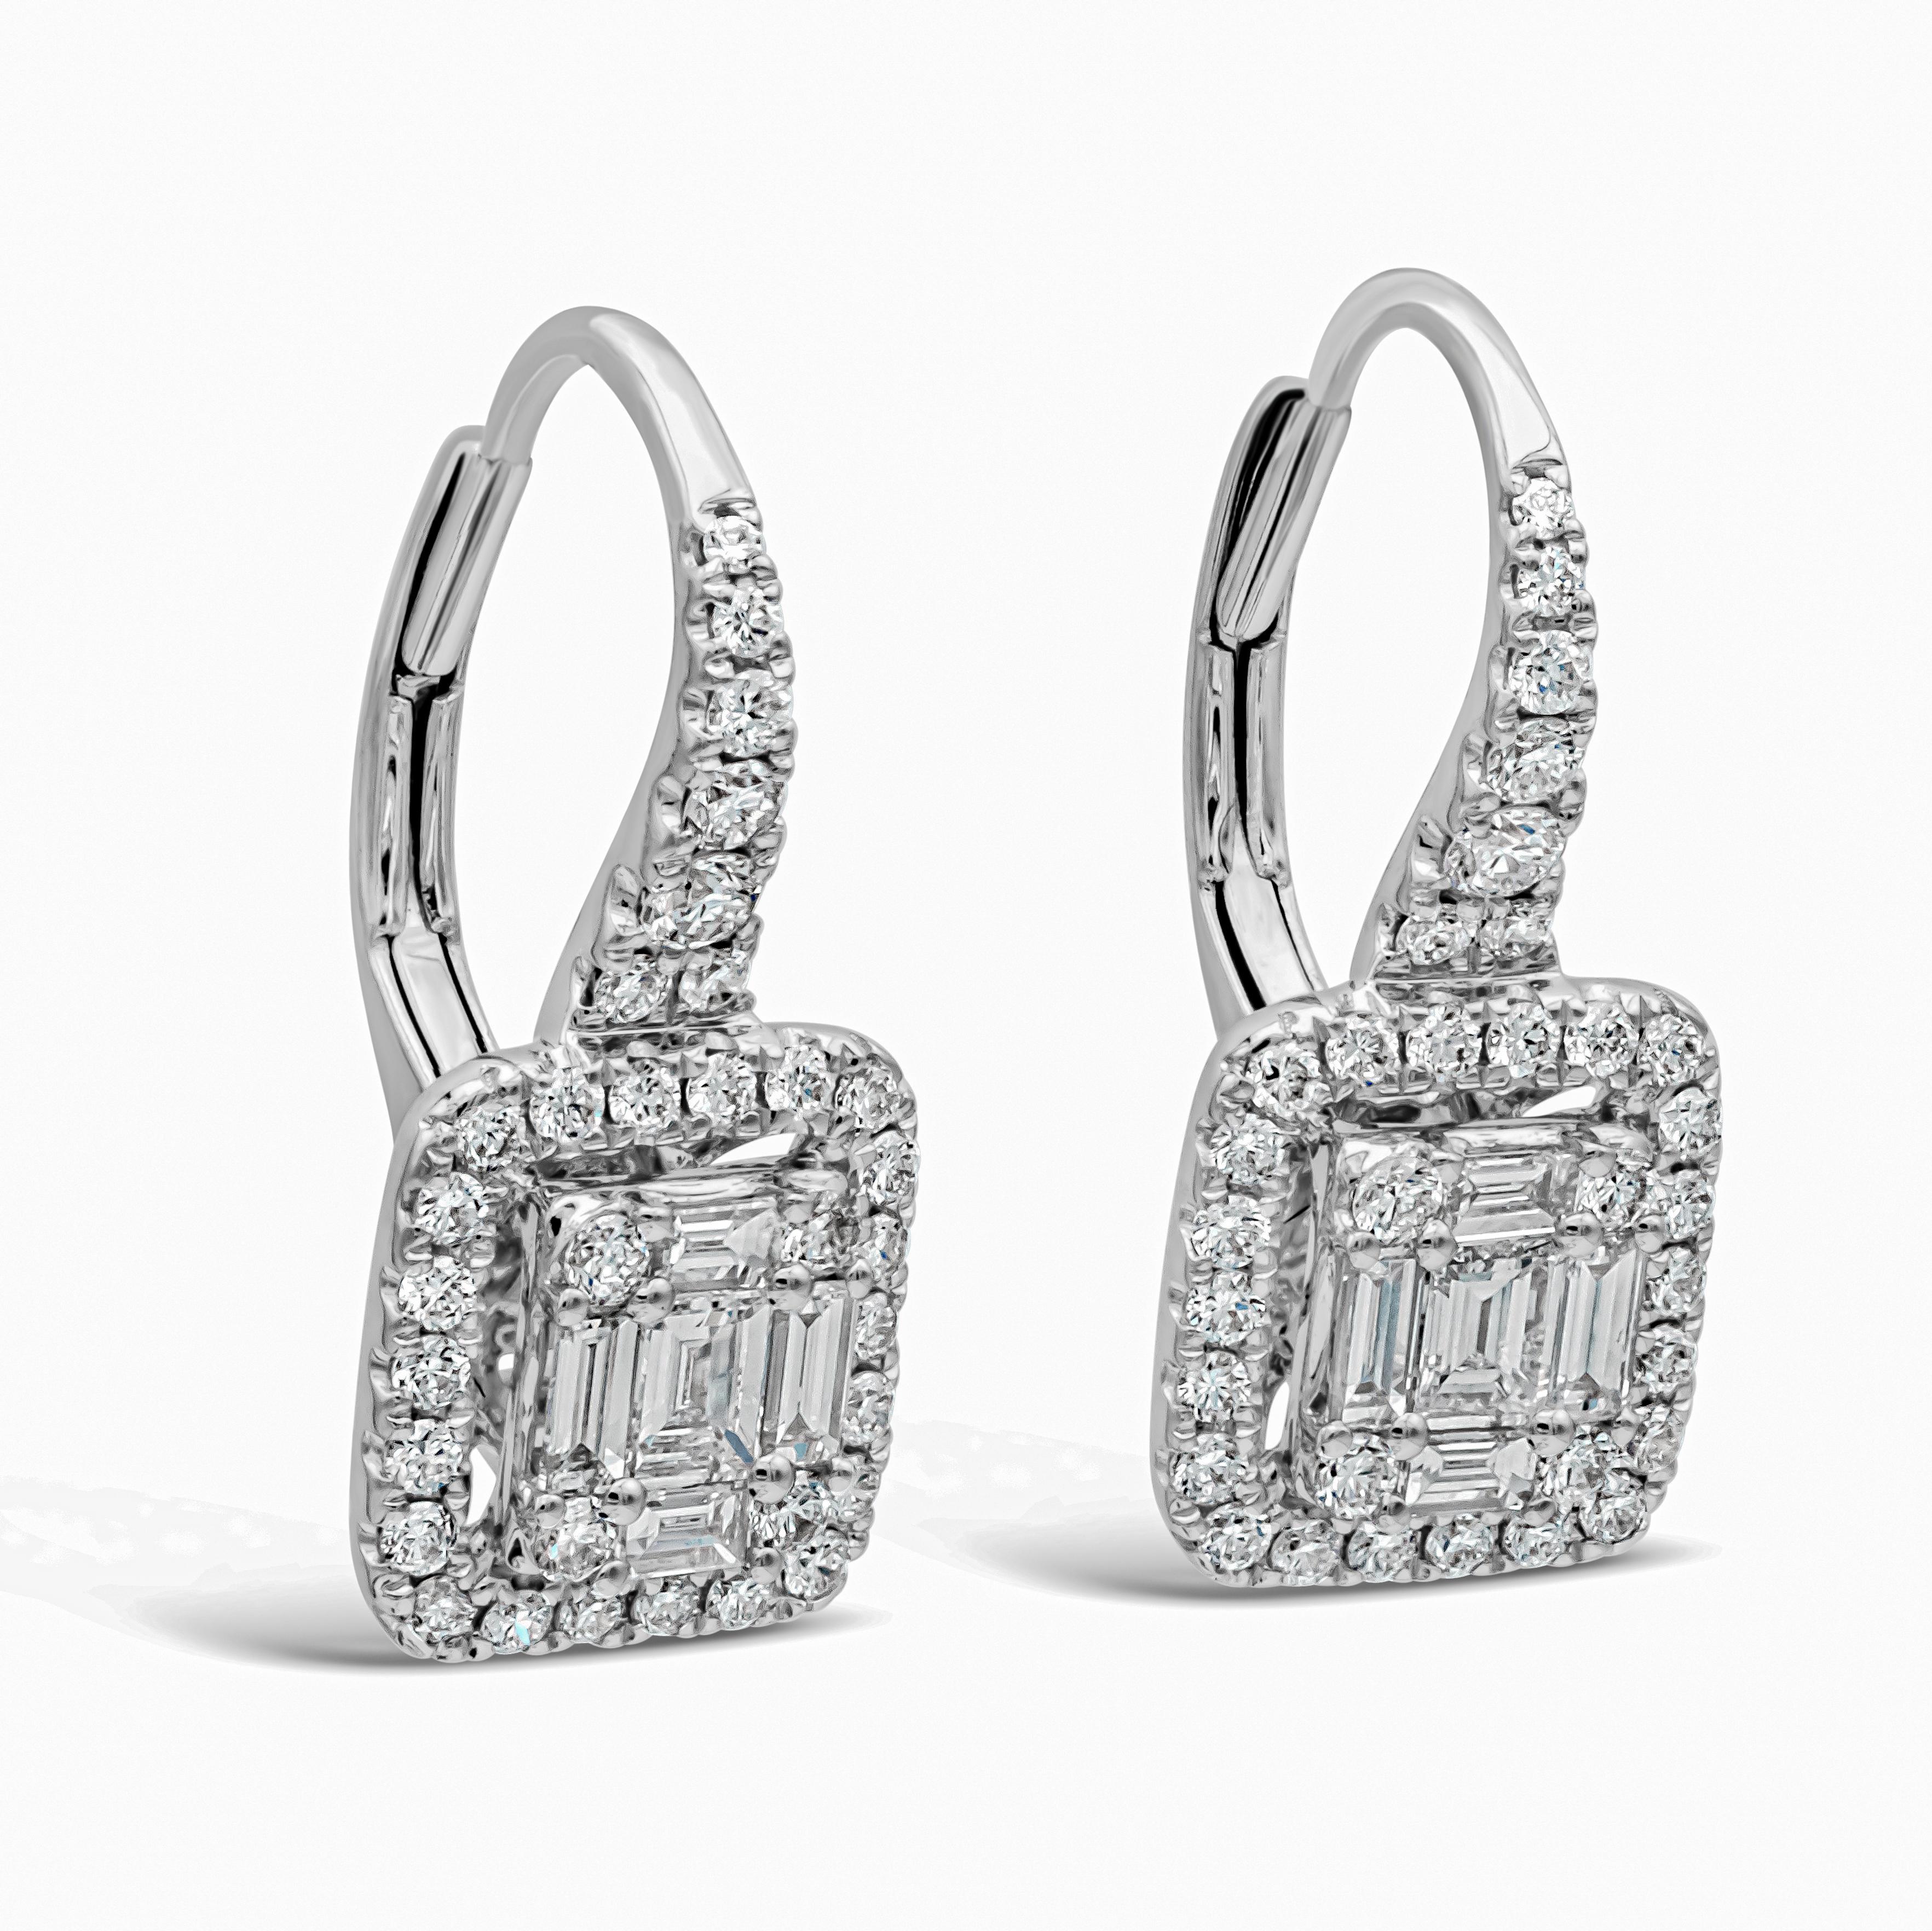 Dieses schöne Paar Ohrringe ist in Form eines Smaragds mit einem offenen Halo um ihn herum gefertigt. Illusion mit einer Mischung aus runden und baguetteförmigen Diamanten. Eingefasst in einen mit Diamanten besetzten Ring aus 18 Karat Weißgold.